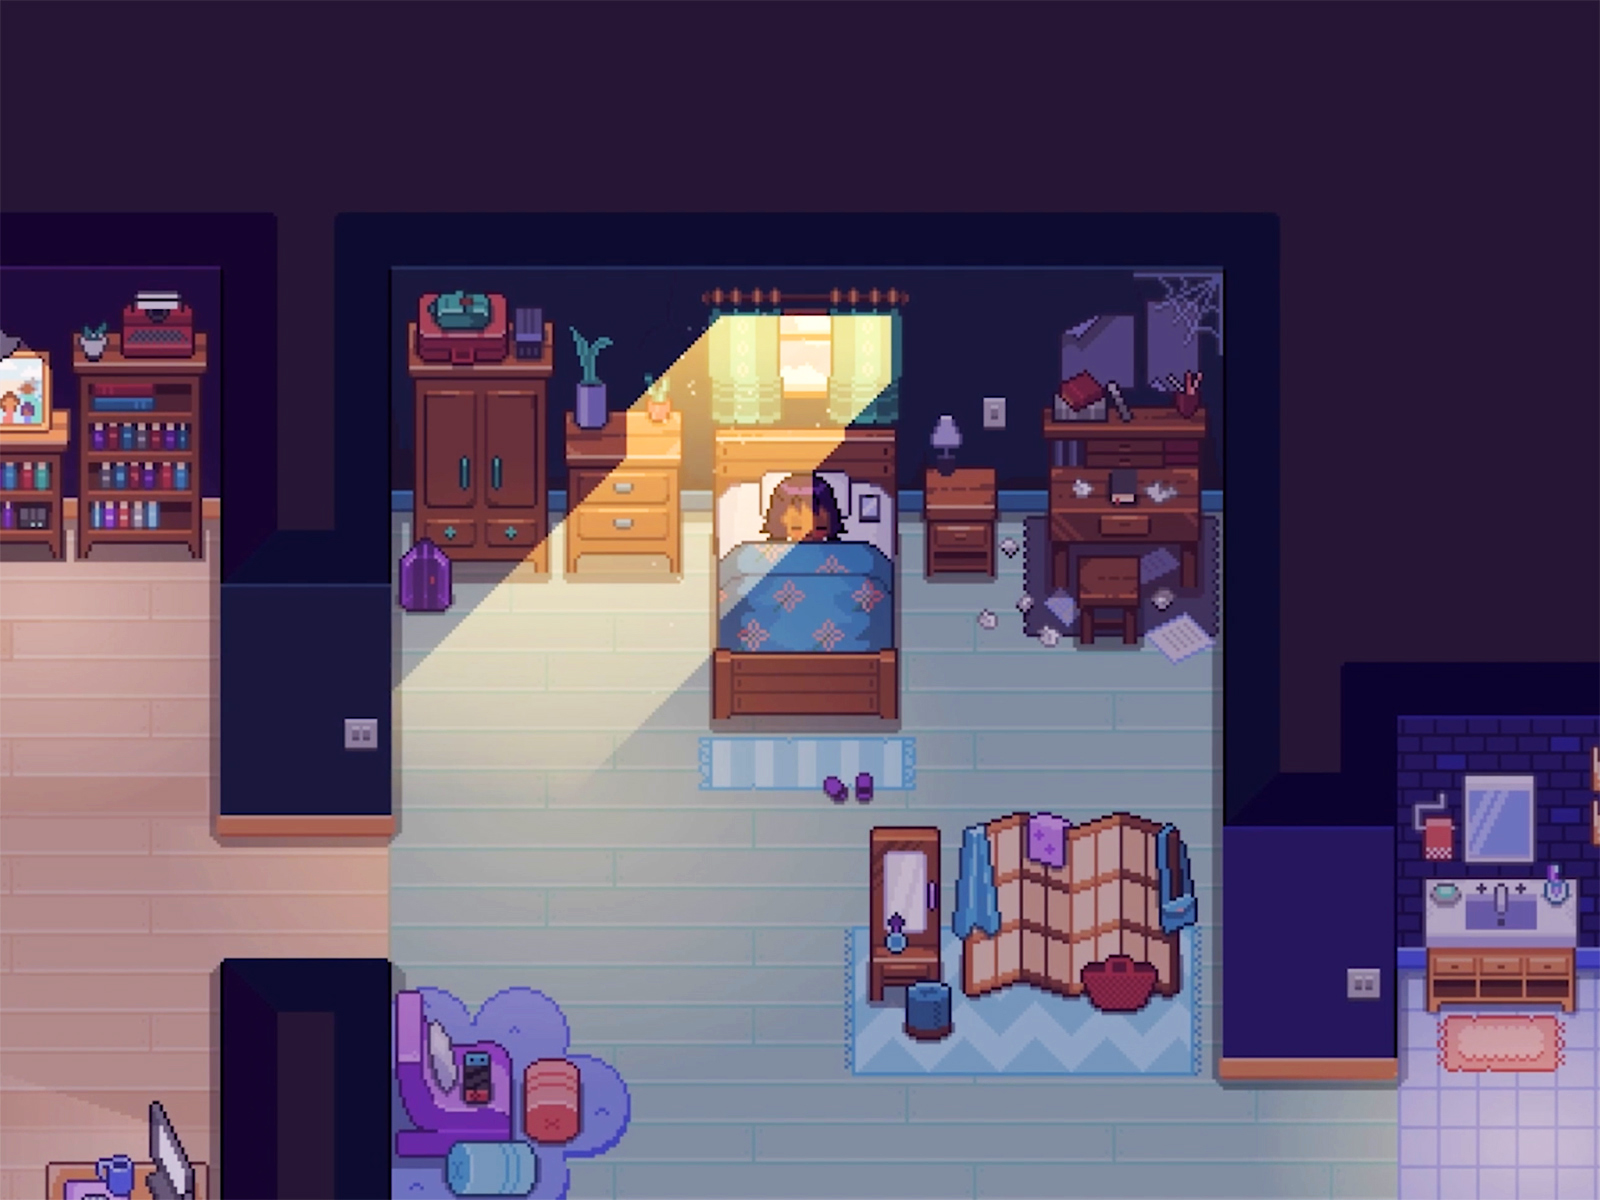 Fishbowl screenshot: Alo in her bedroom